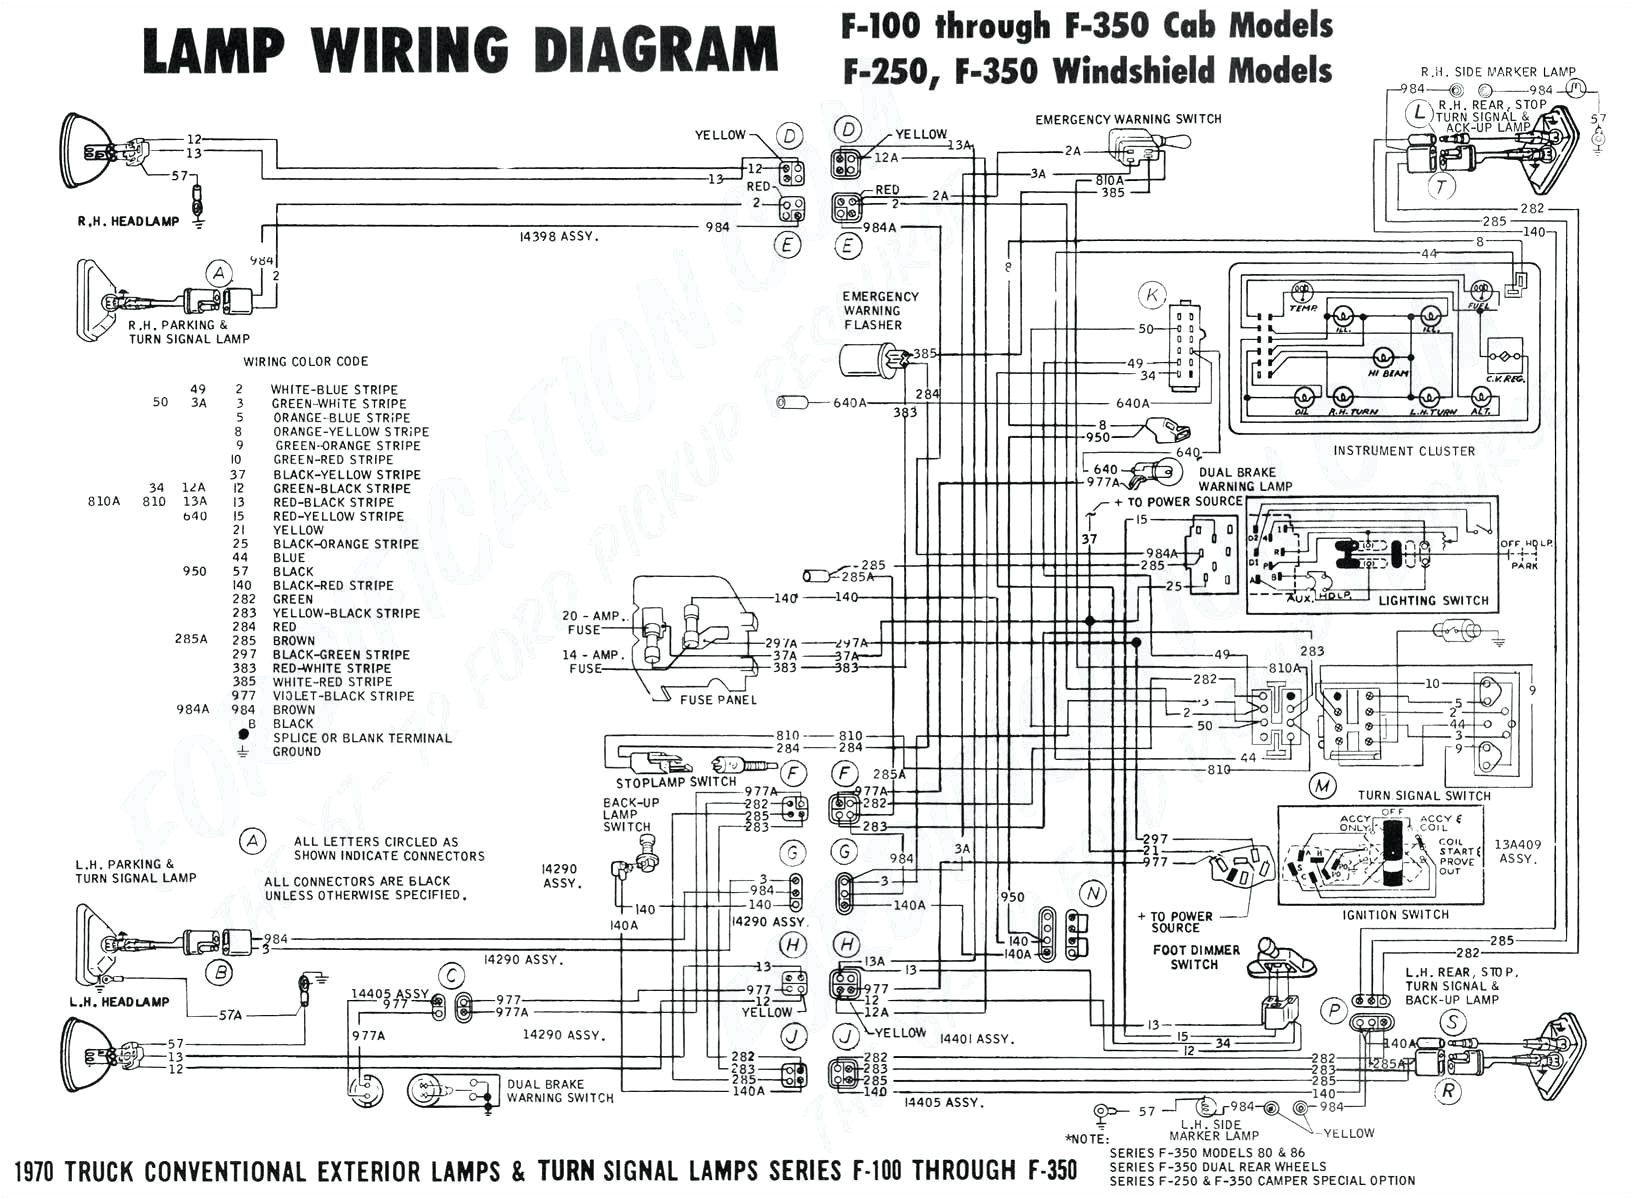 1995 buick wiring harness schematics wiring diagram expert 1995 buick wiring harness schematics